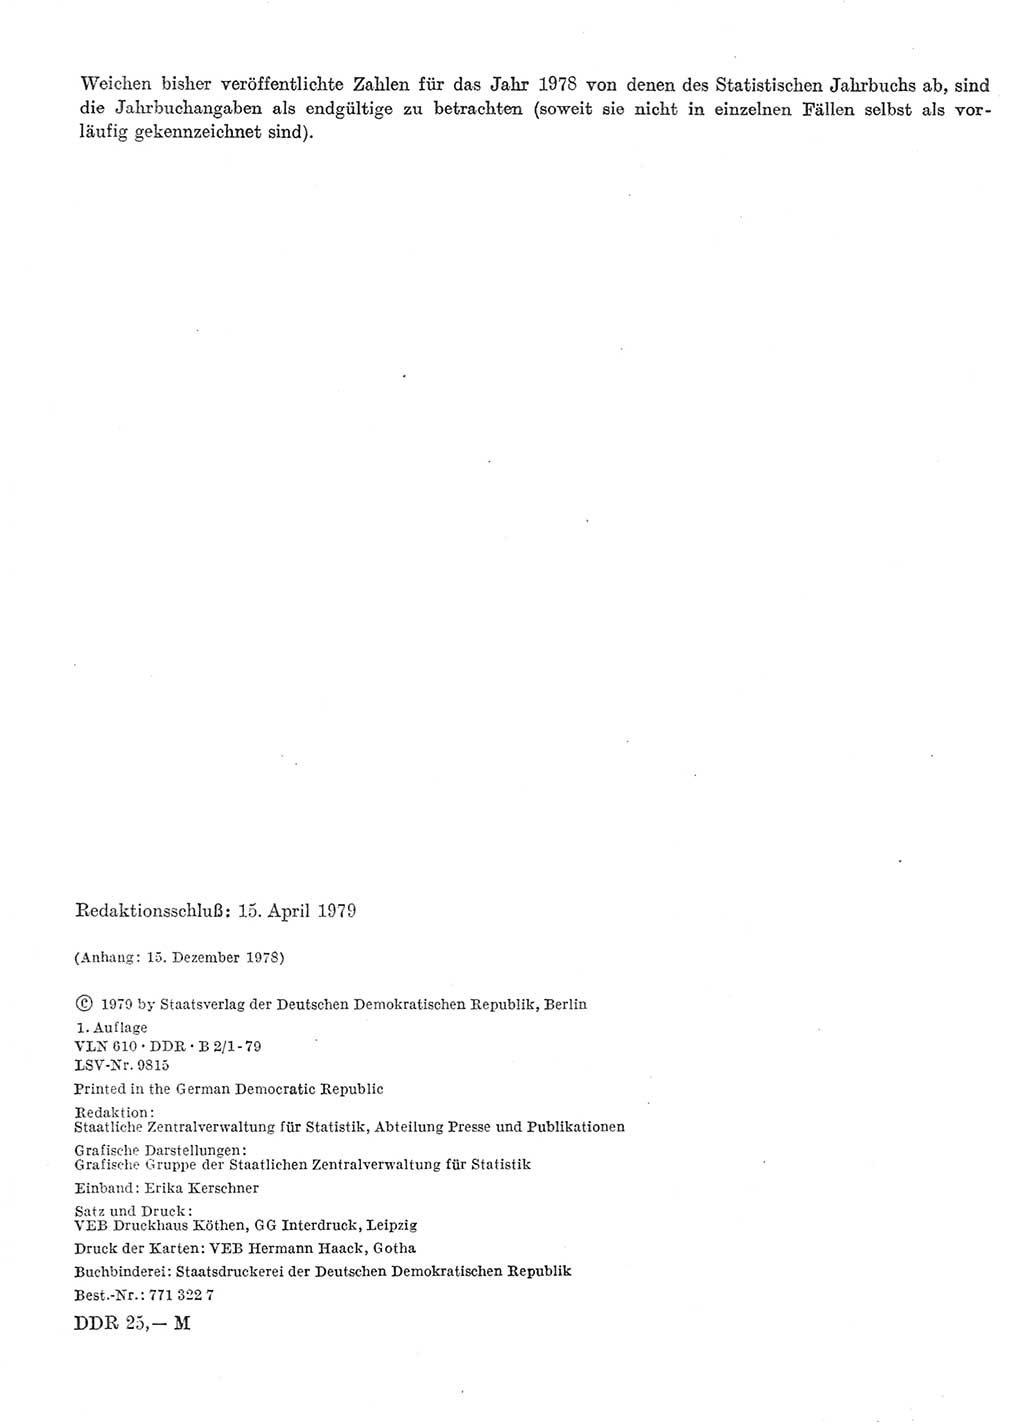 Statistisches Jahrbuch der Deutschen Demokratischen Republik (DDR) 1979, Seite 2 (Stat. Jb. DDR 1979, S. 2)